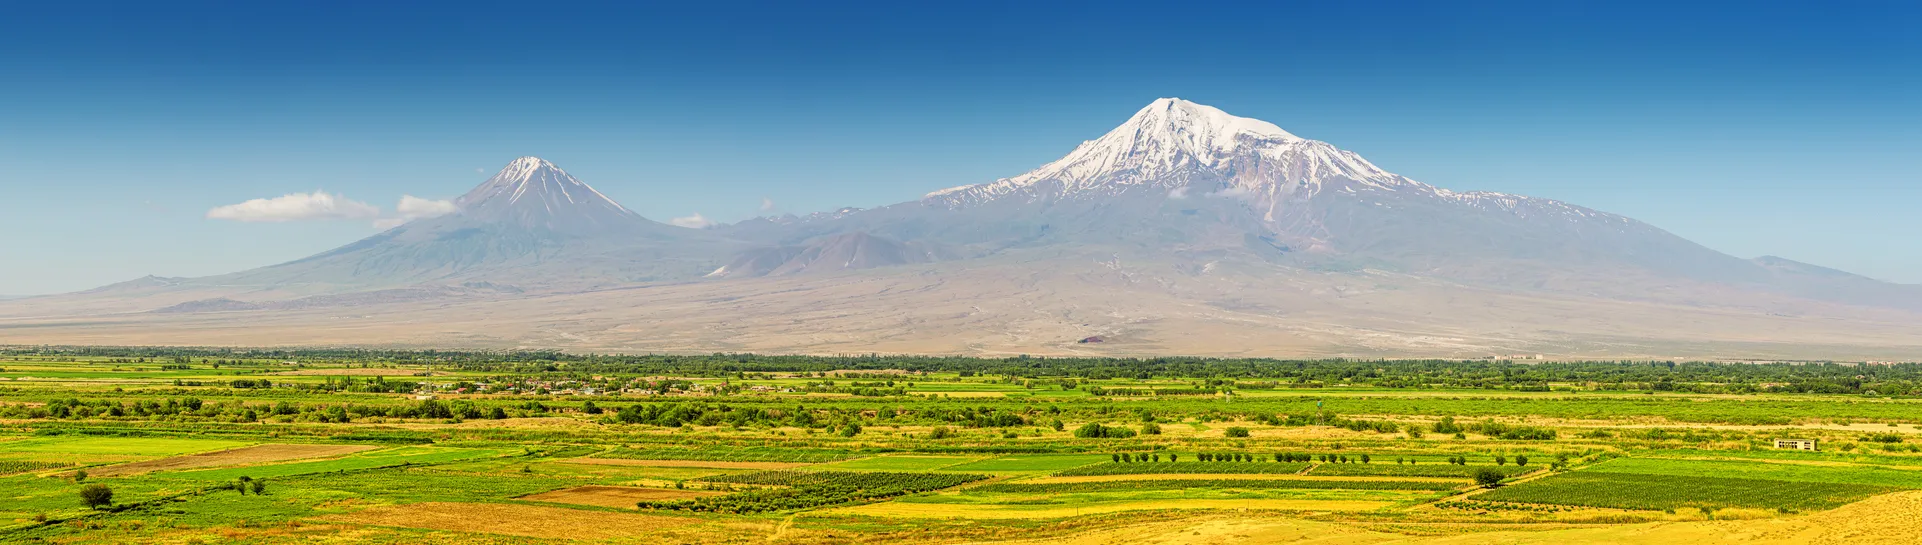 Les sommets du Petit Ararat et du Grand Ararat derrière une vallée agricole de l'Arménie © iStock / frantic00